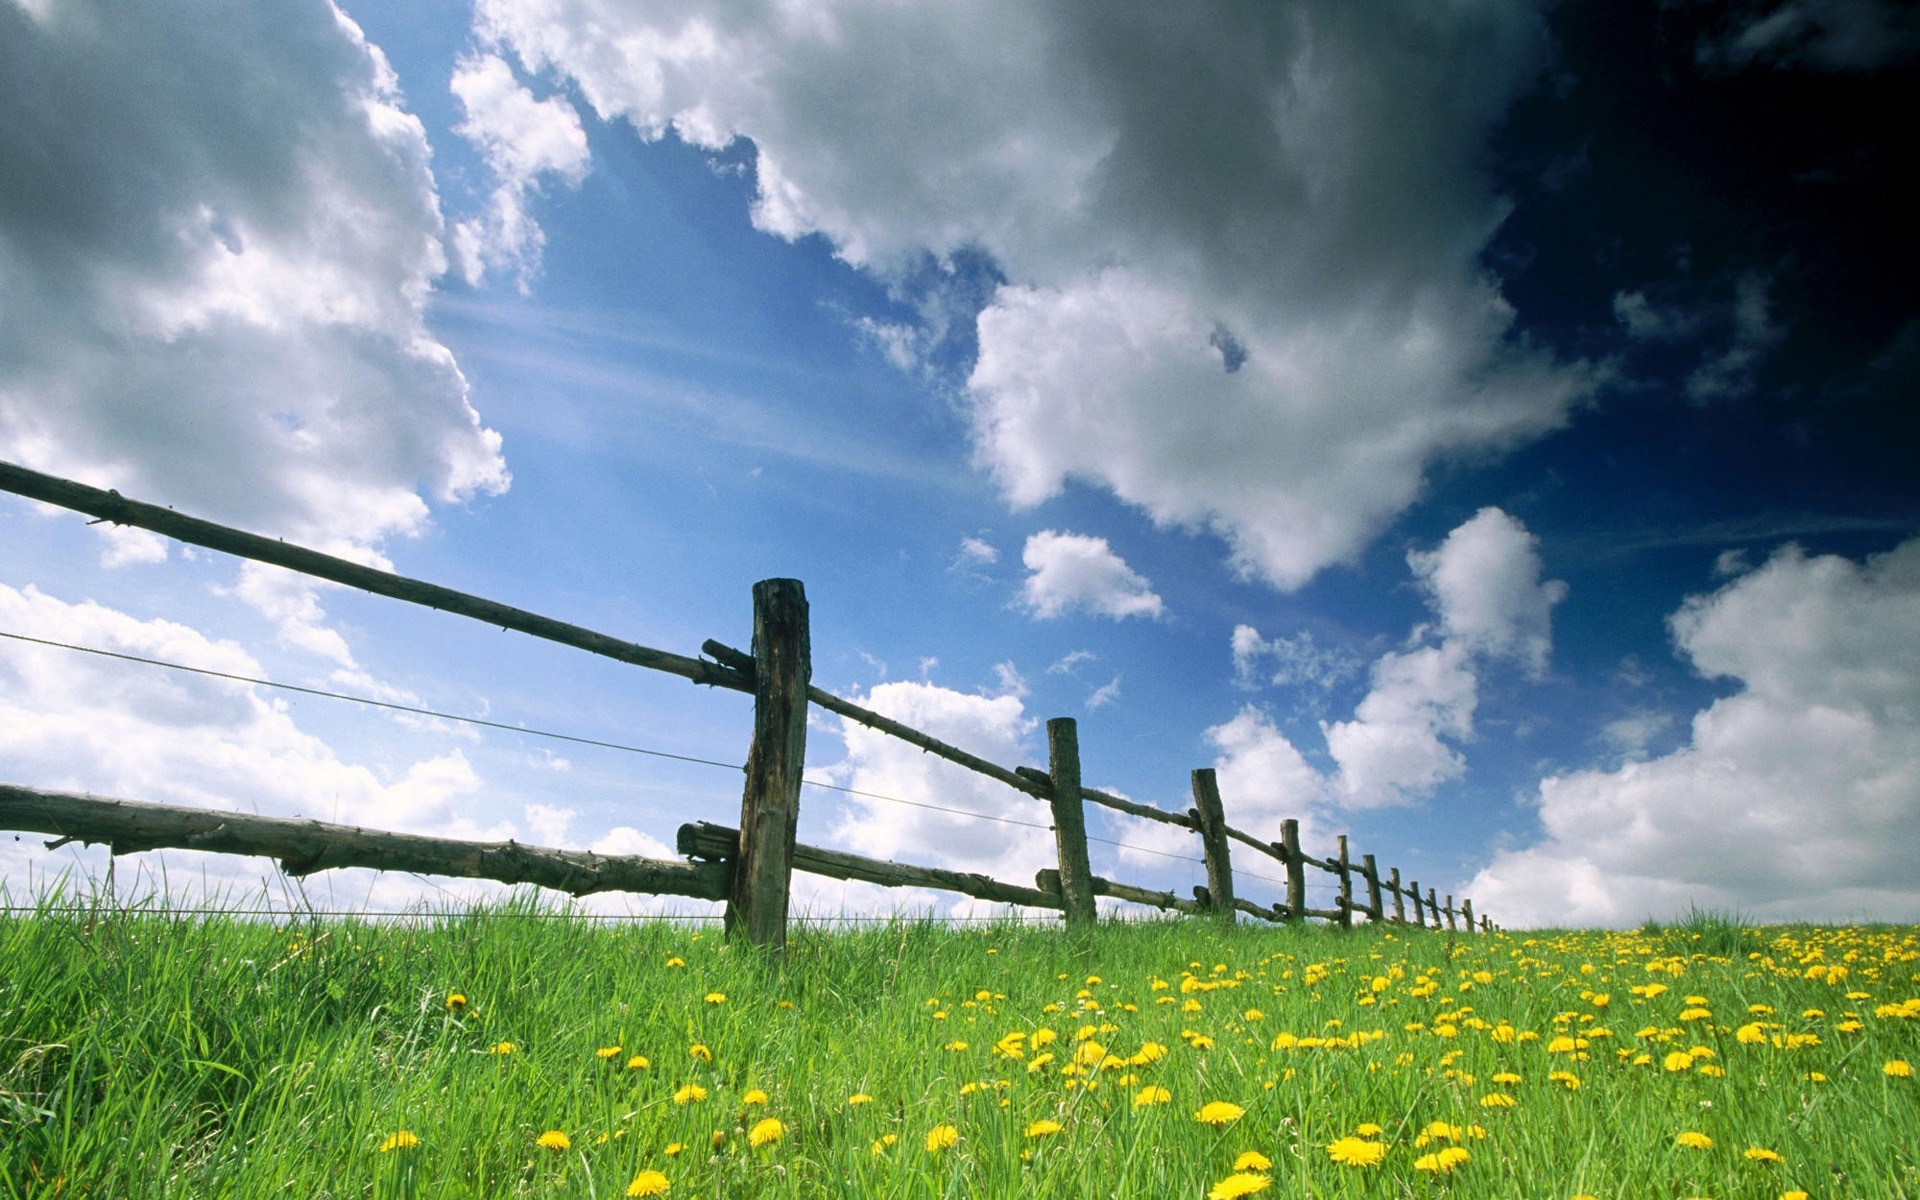 весна трава пейзаж поле природа сенокос цветок сельских лето небо ферма сельской местности страна забор сельское хозяйство одуванчик солнце облако на открытом воздухе флора цветы